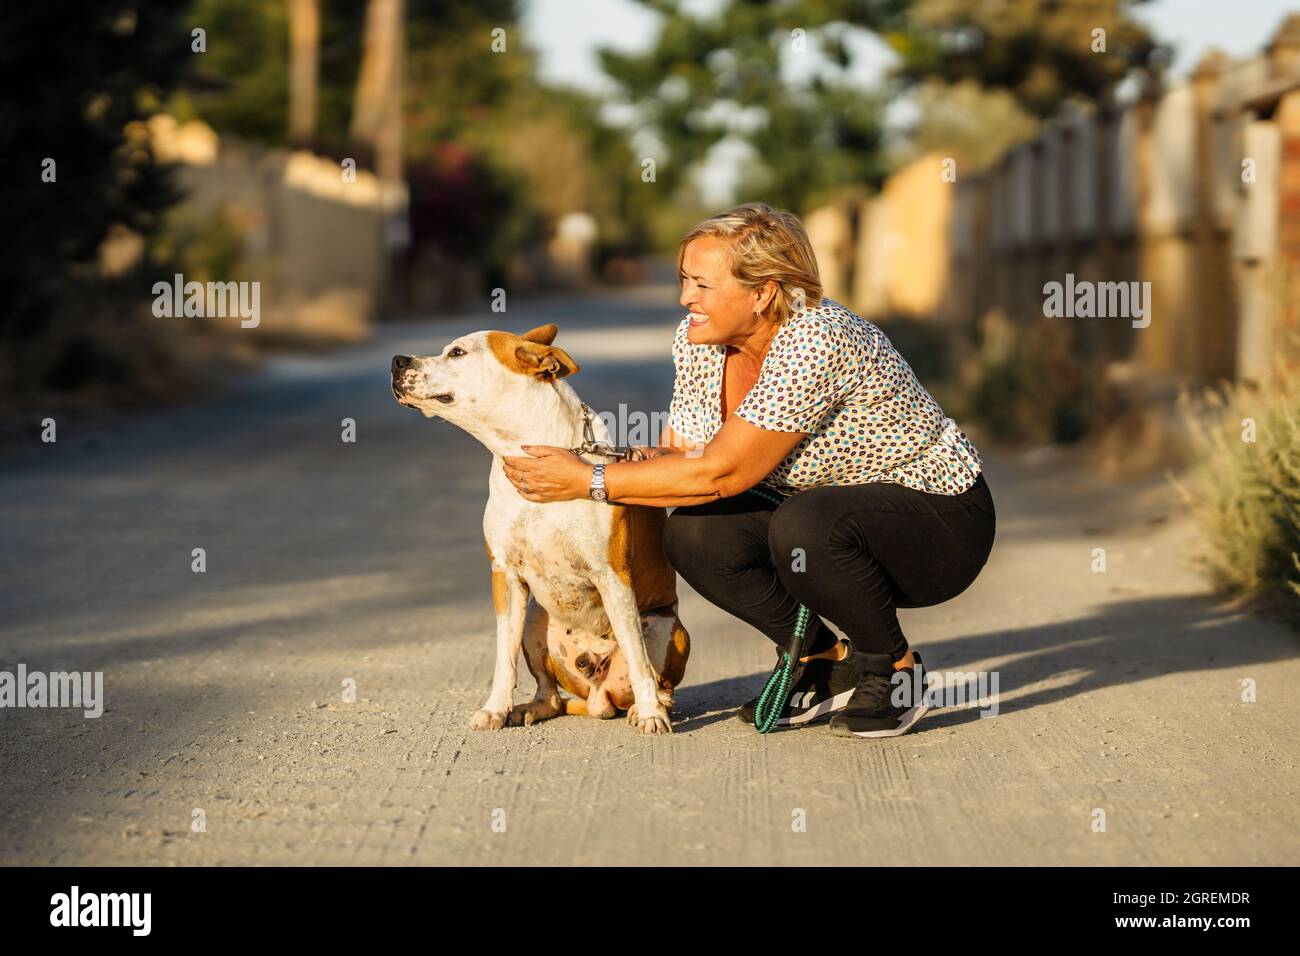 Donna accovacciata in una strada sterrata accanto ad un cane che si siede distratto Foto Stock